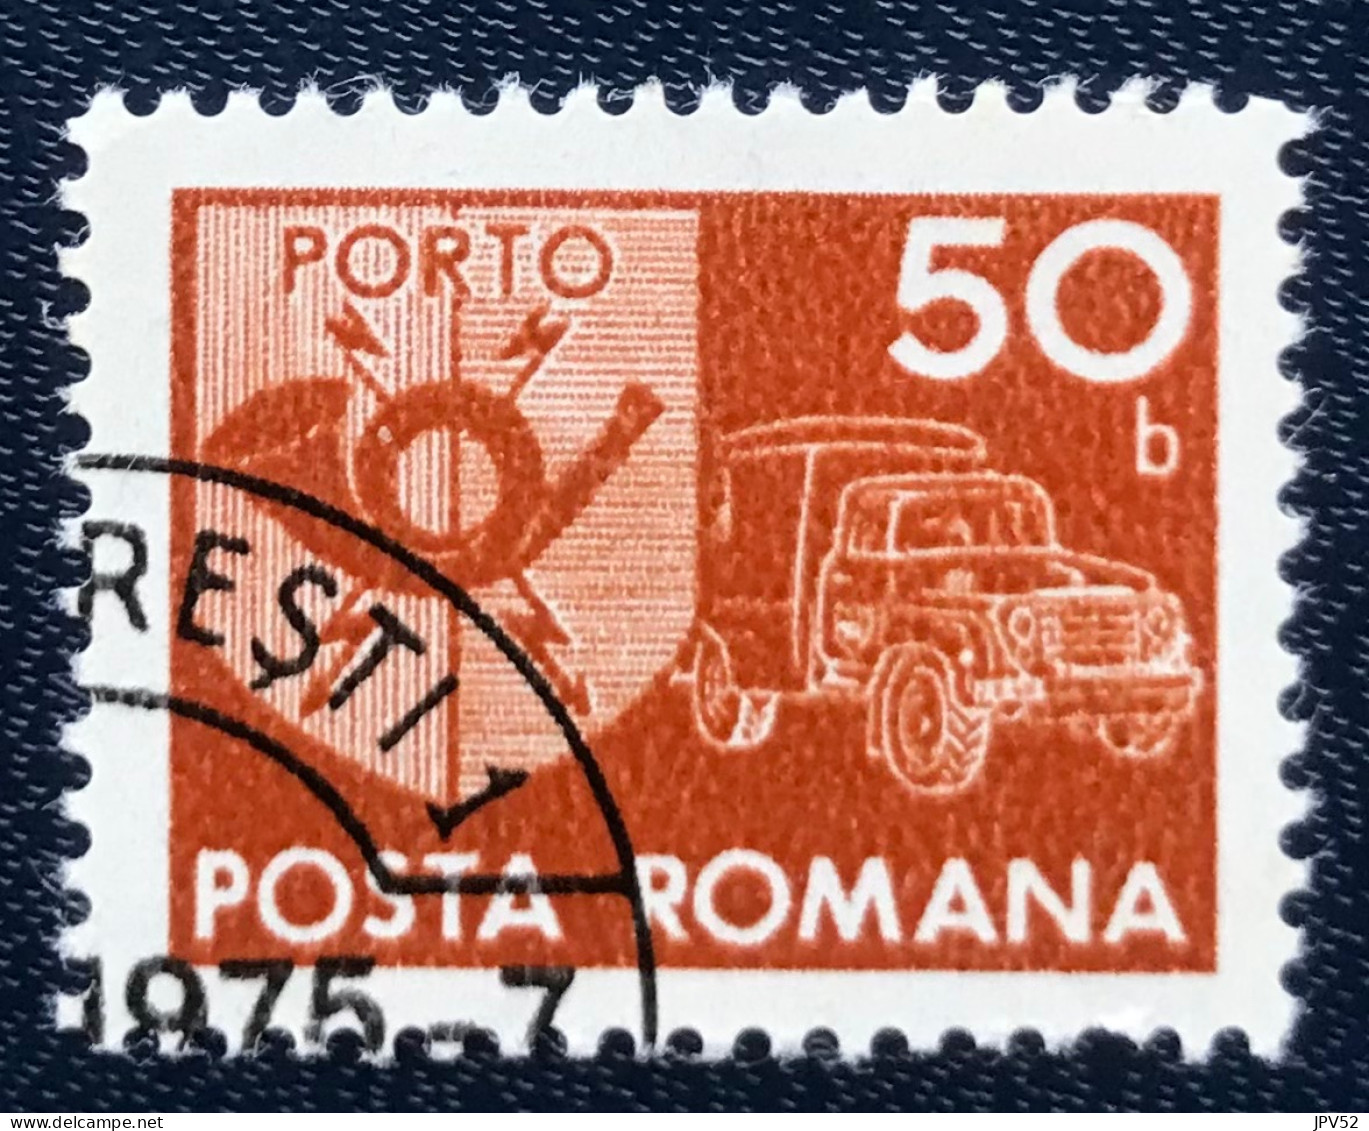 Romana - Roemenië - C14/55 - 1974 - (°)used - Michel 123 - Postembleem & Postvoertuig - Strafport